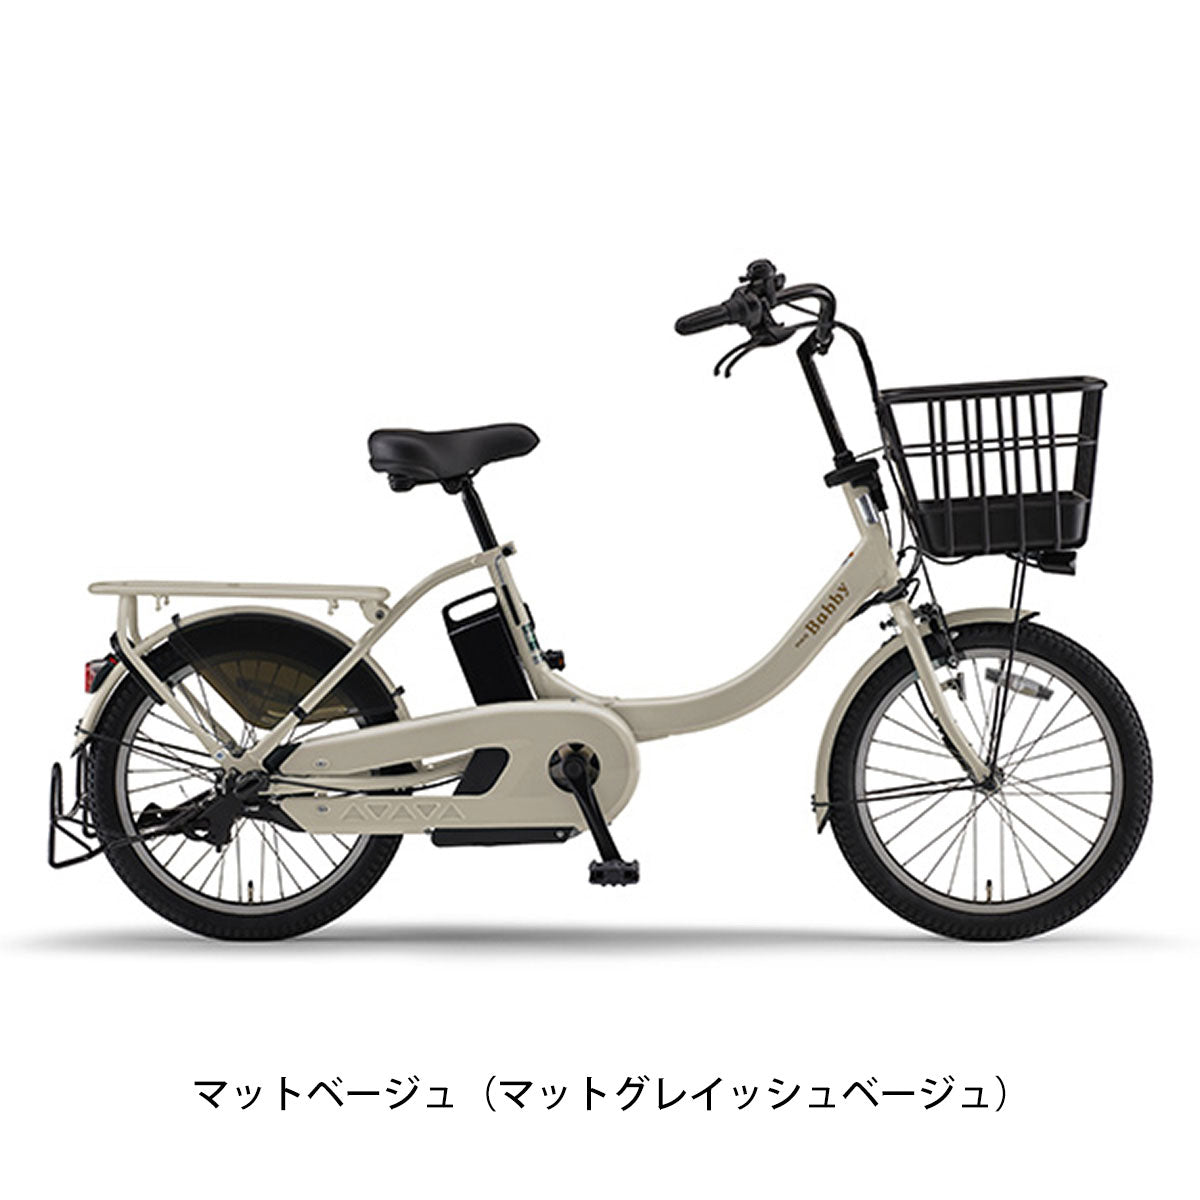 30,810円H9415 ヤマハ パス バビー 電動アシスト自転車